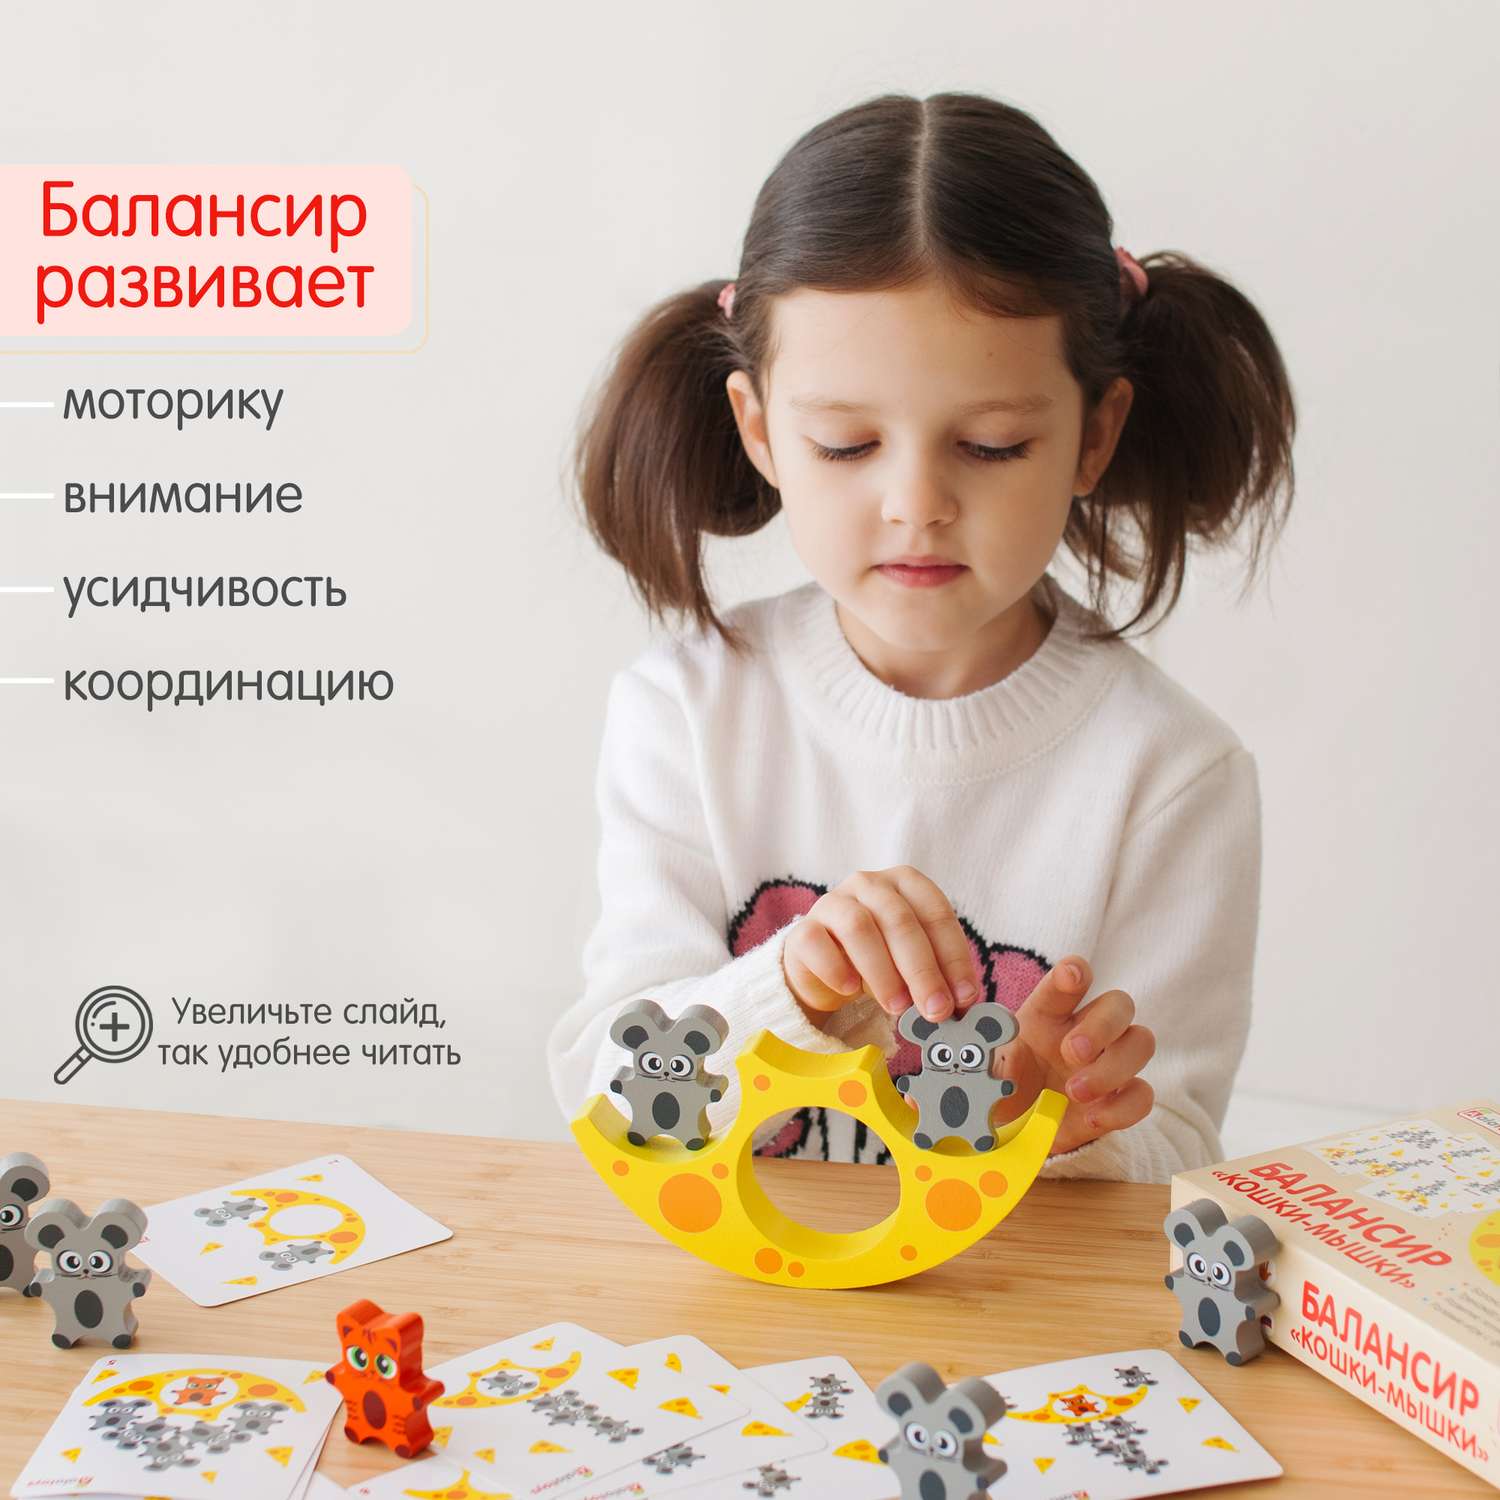 Балансир Кошки-Мышки Alatoys 8 фигурок деревянная развивающая игра - фото 2